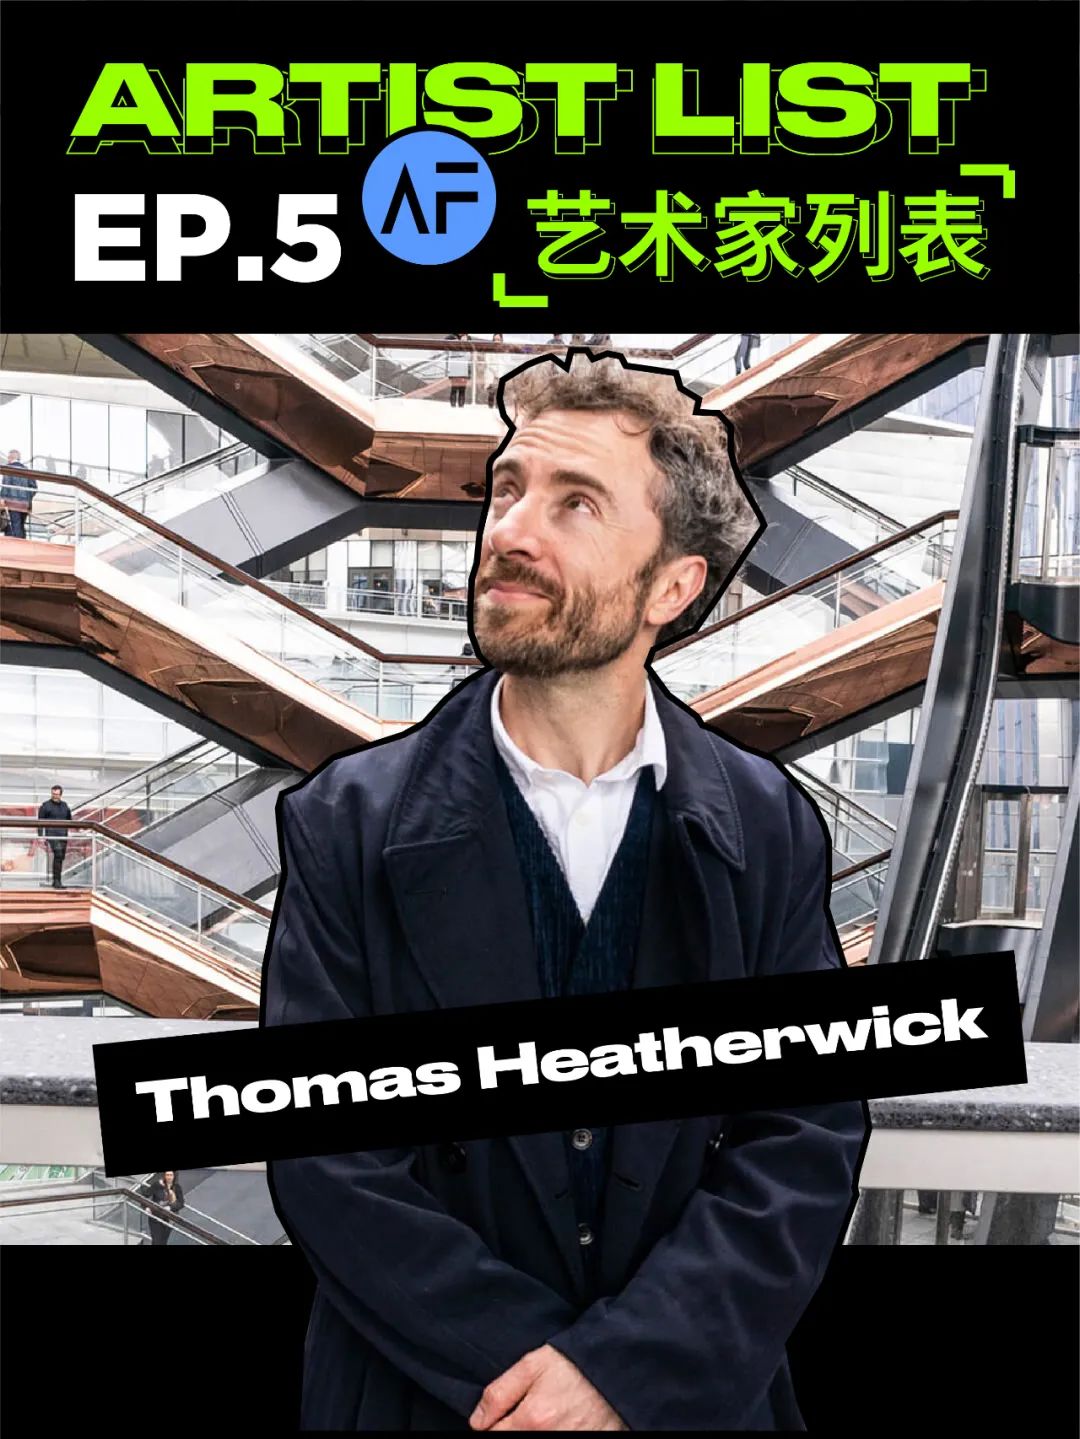 英国鬼才建筑师Thomas Heatherwick 是如何颠覆世界建筑的？